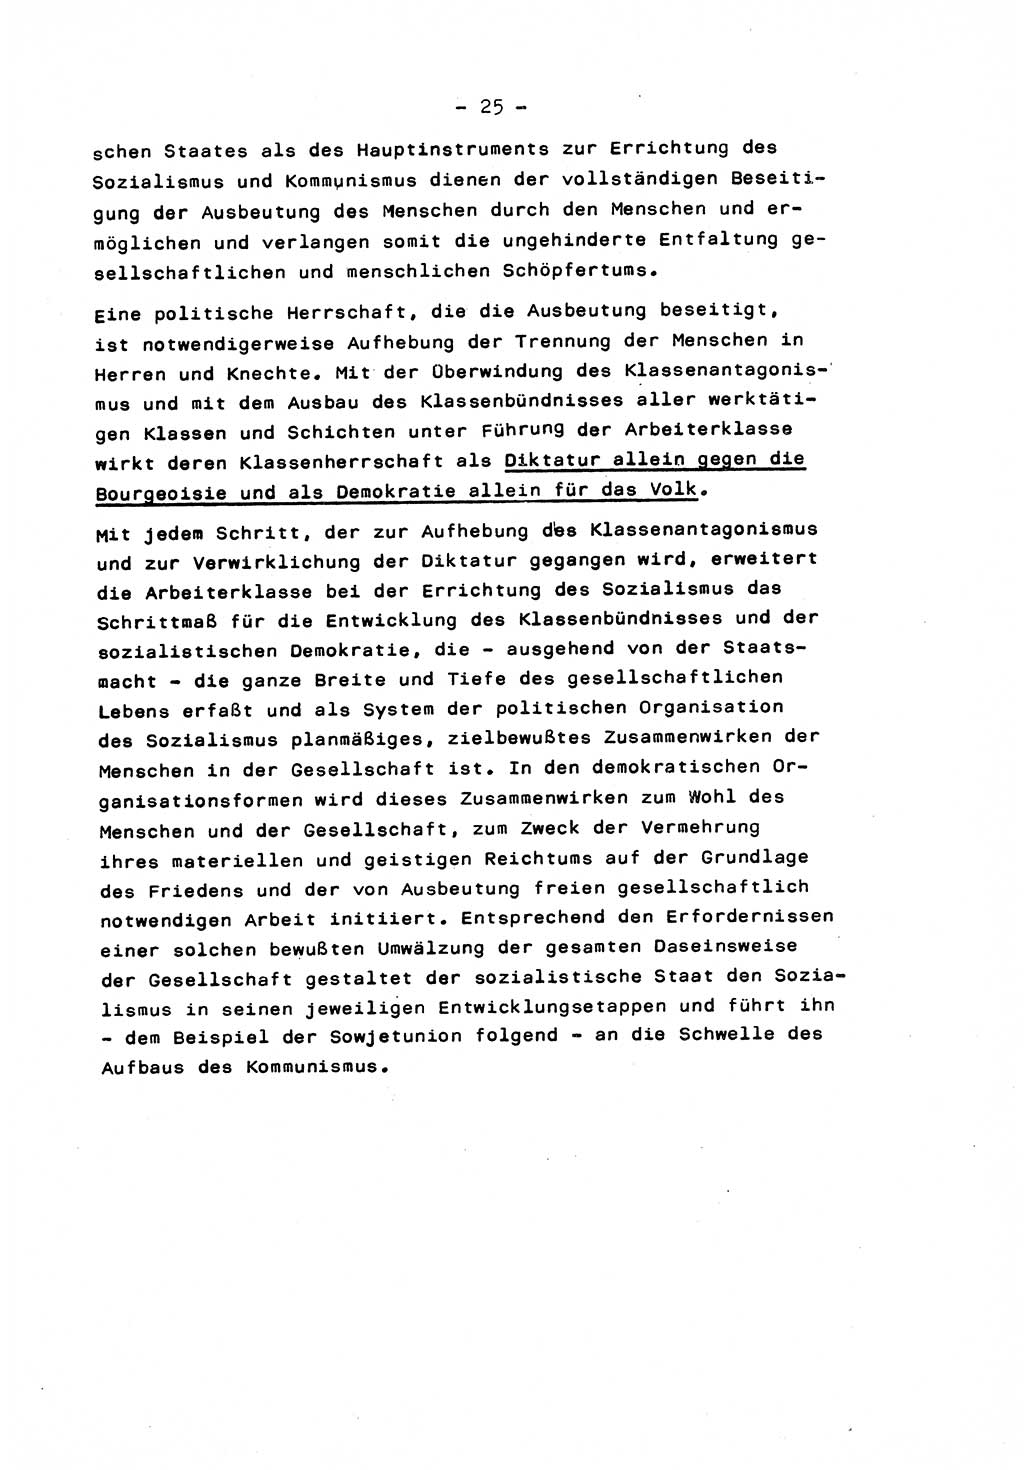 Marxistisch-leninistische Staats- und Rechtstheorie [Deutsche Demokratische Republik (DDR)] 1975, Seite 25 (ML St.-R.-Th. DDR 1975, S. 25)